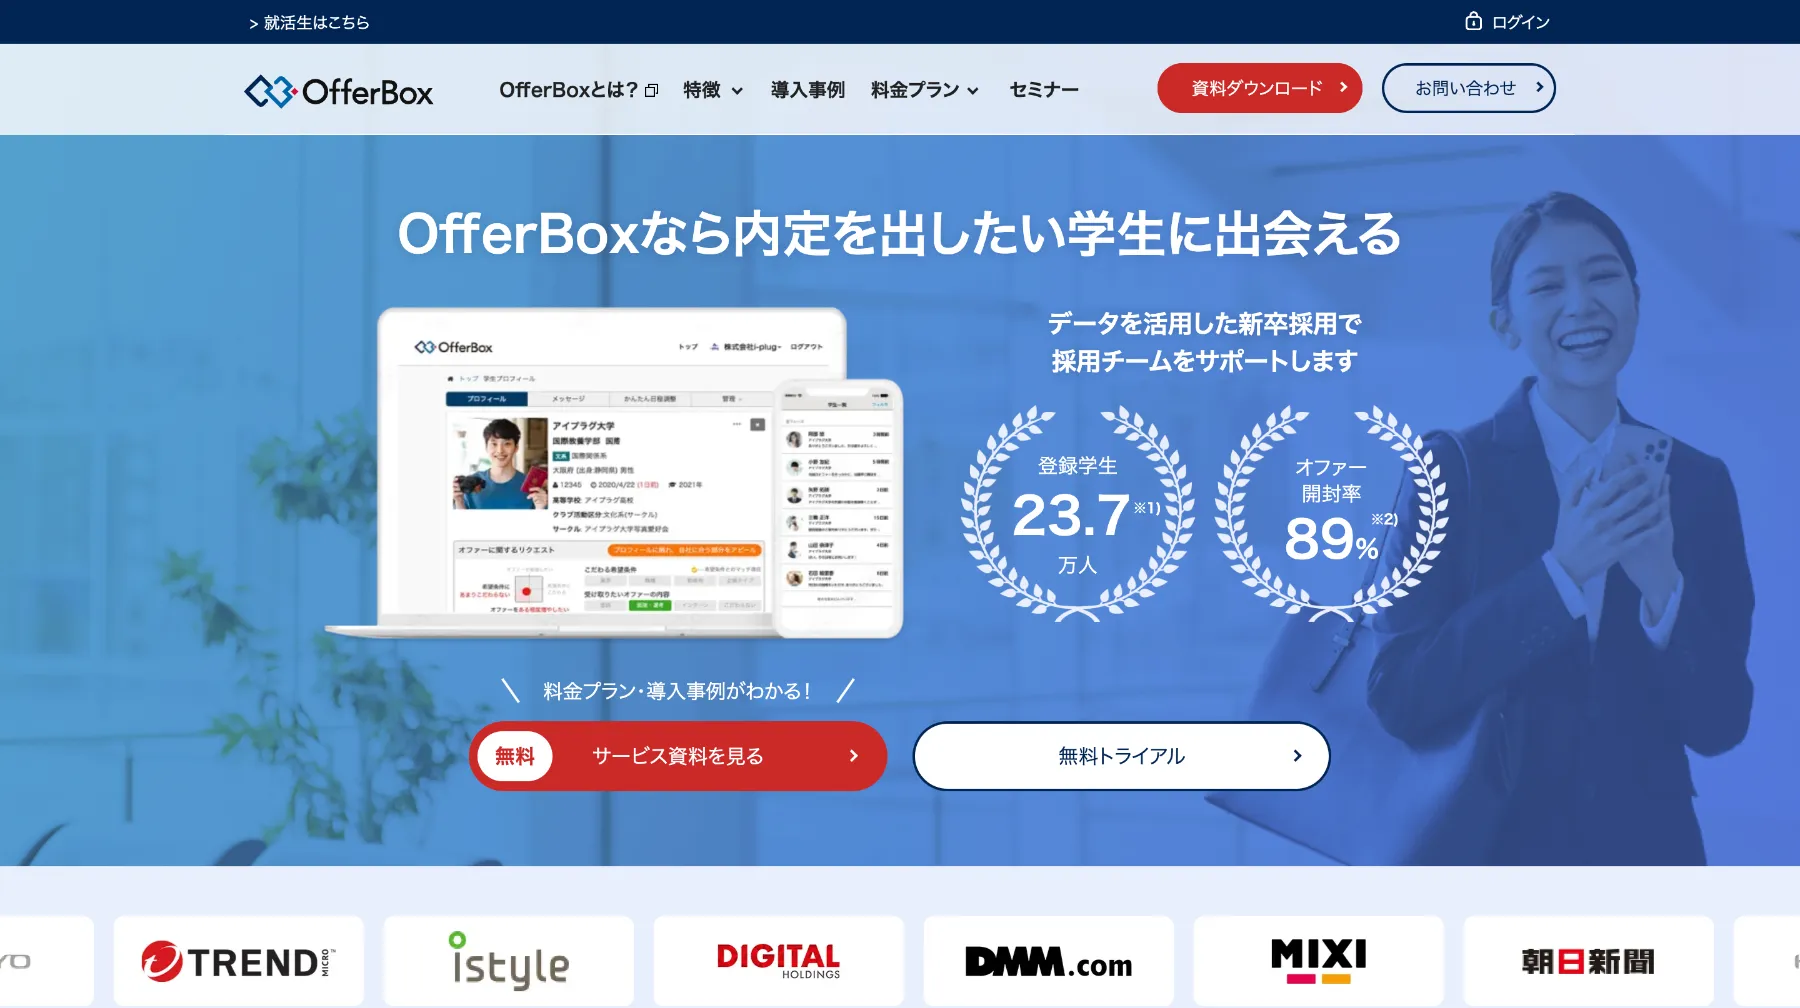 OfferBox公式サイト